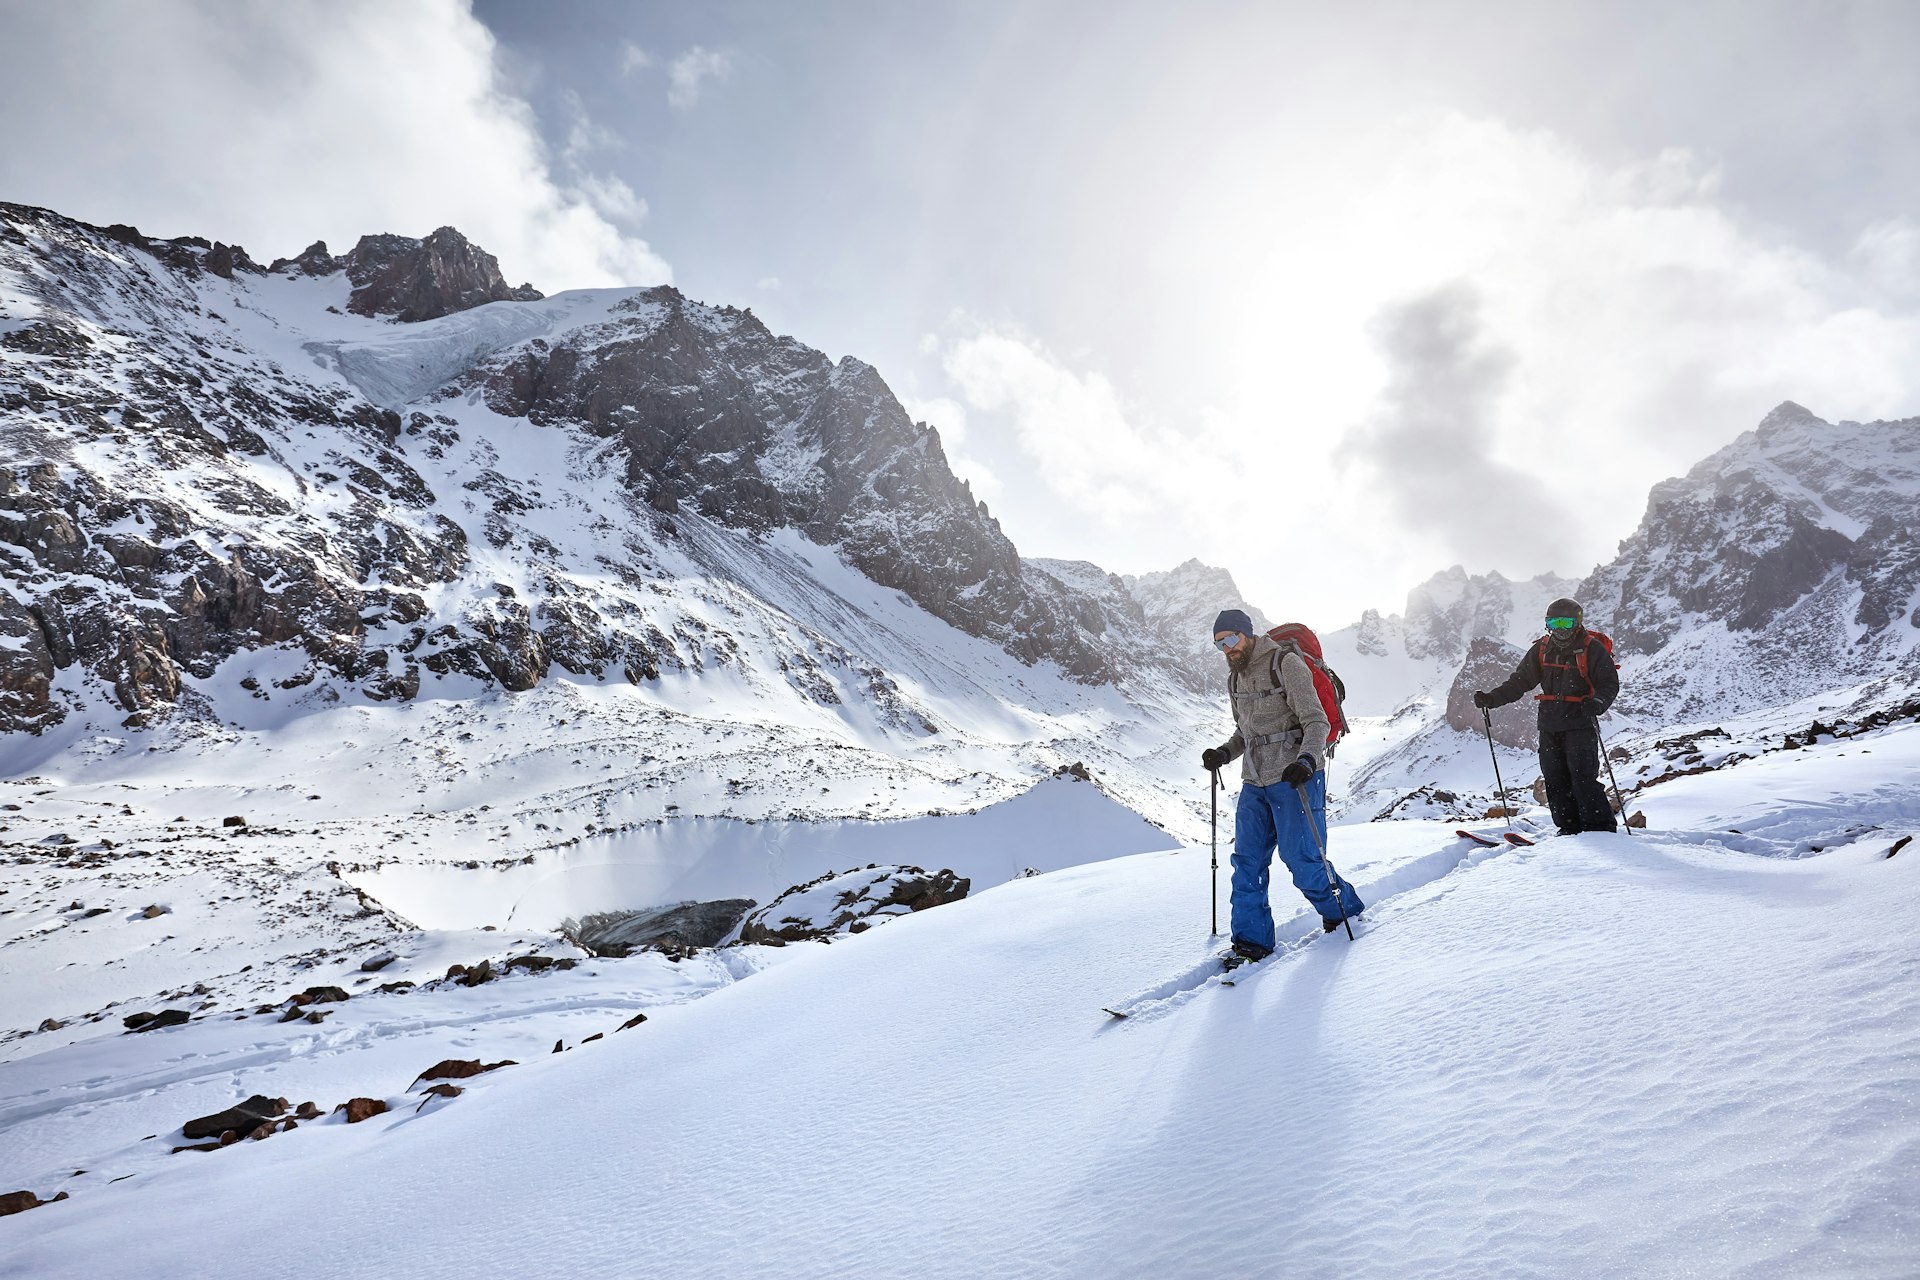 Two men ski touring in the snowy mountains of Kazakhstan